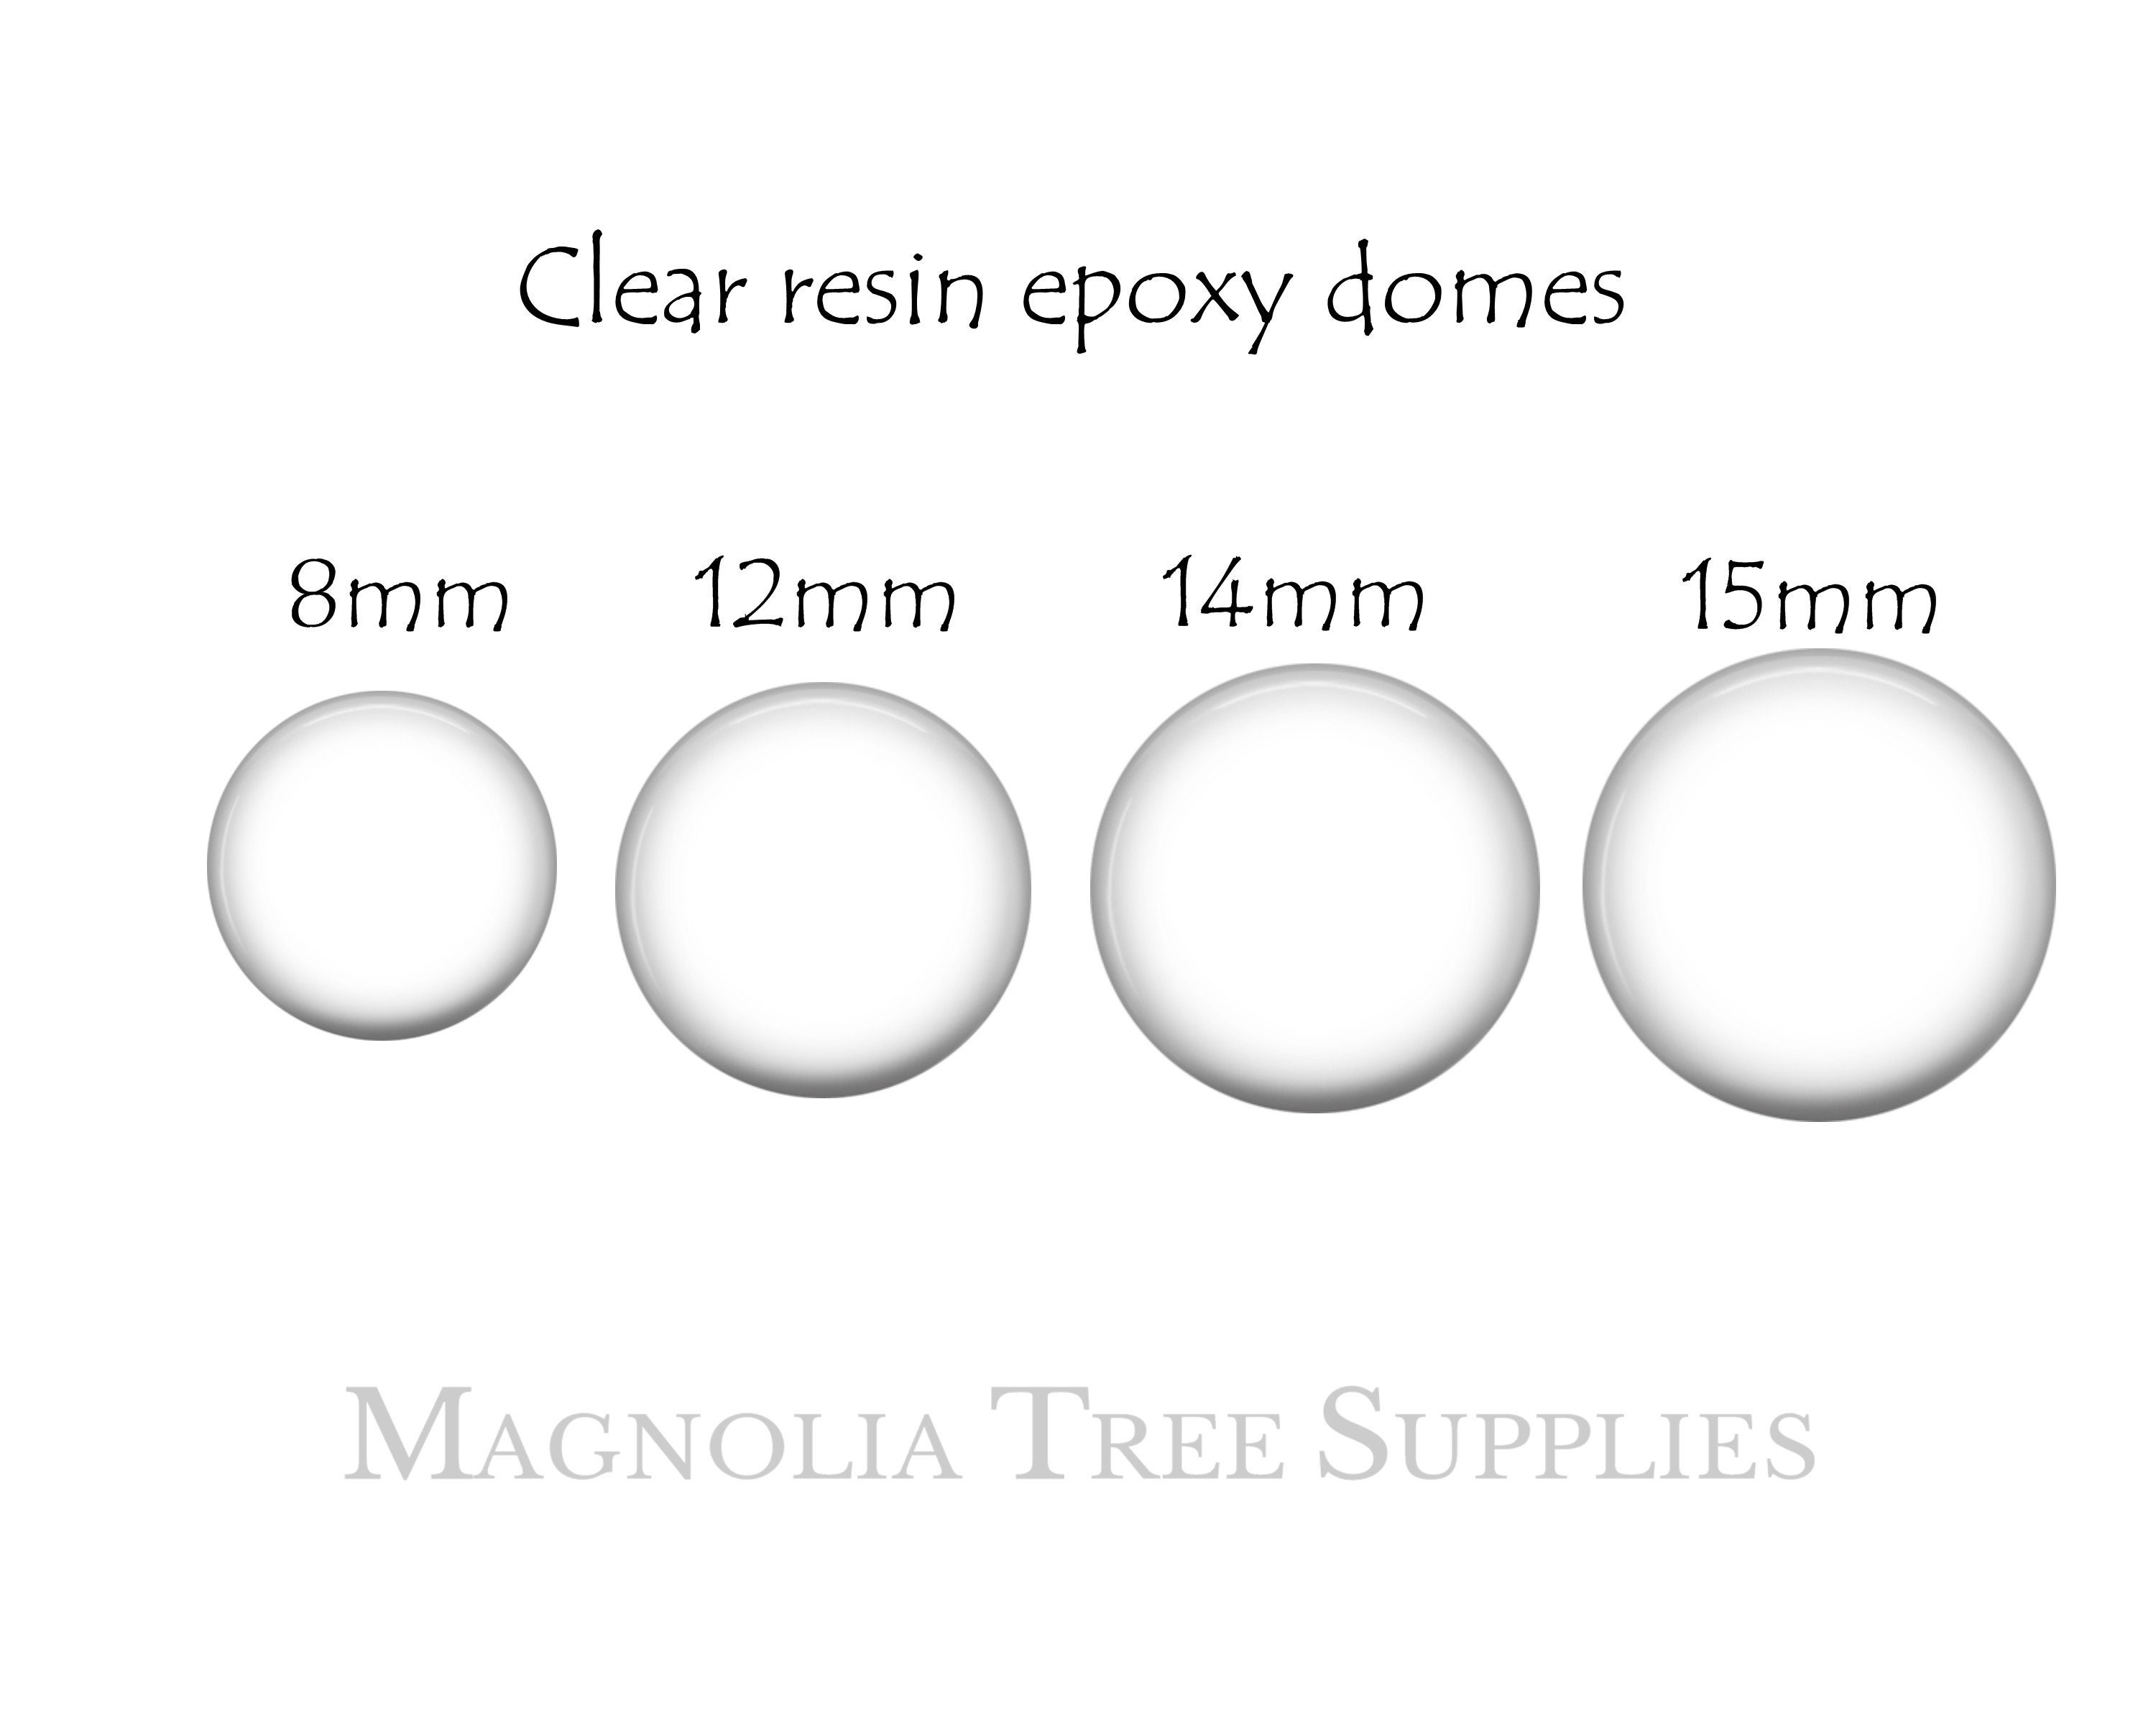 Mr.Resin™ Original Craft UV Resin 17.6oz (500g) Crystal Clear Hard